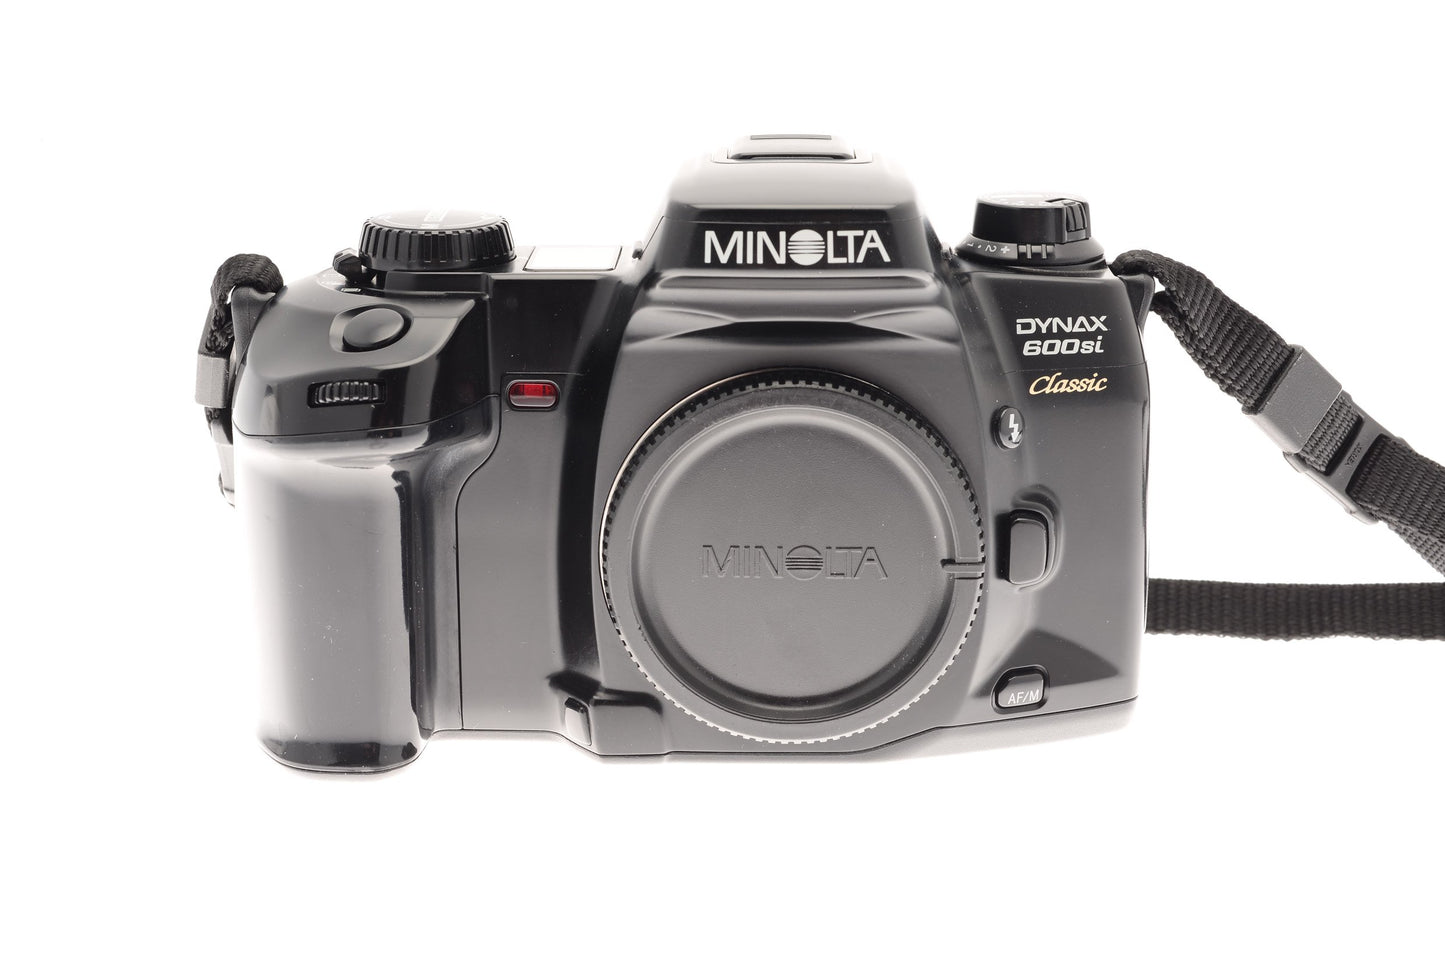 Minolta Dynax 600si Classic - Camera